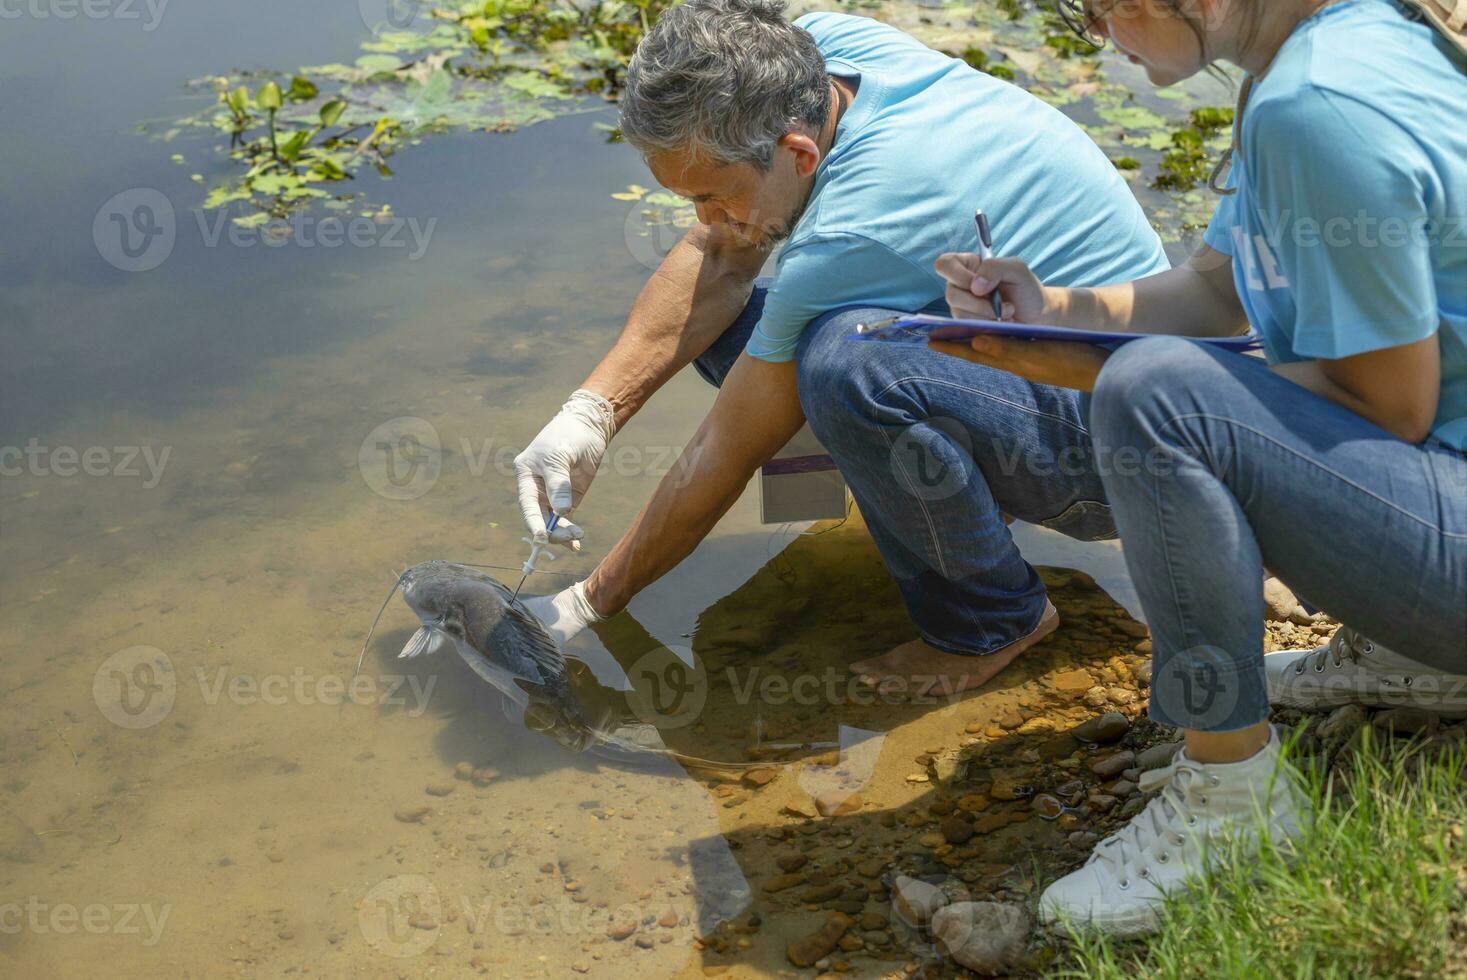 mogna manlig biolog injicering mikrochips till reproducera fisk i de flod och en ung kvinna hjälpare spela in data, begrepp av volontärer bevarande av sällsynt fisk arter den där är handla om till gå utdöd foto